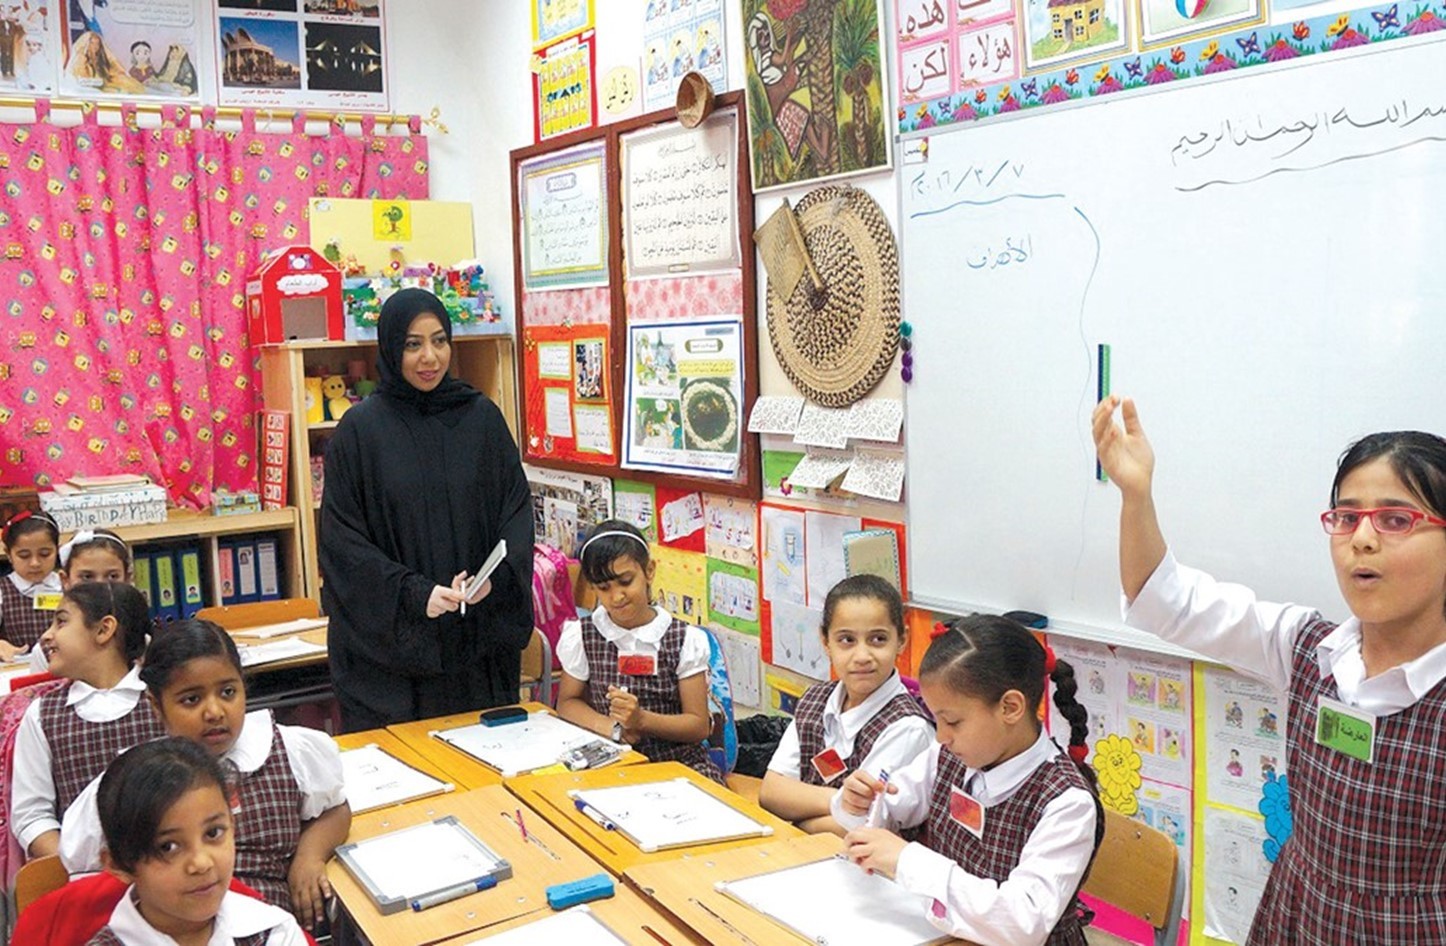 كيفية حساب عمر الطفل لدخول المدرسة 1443 في السعودية؟